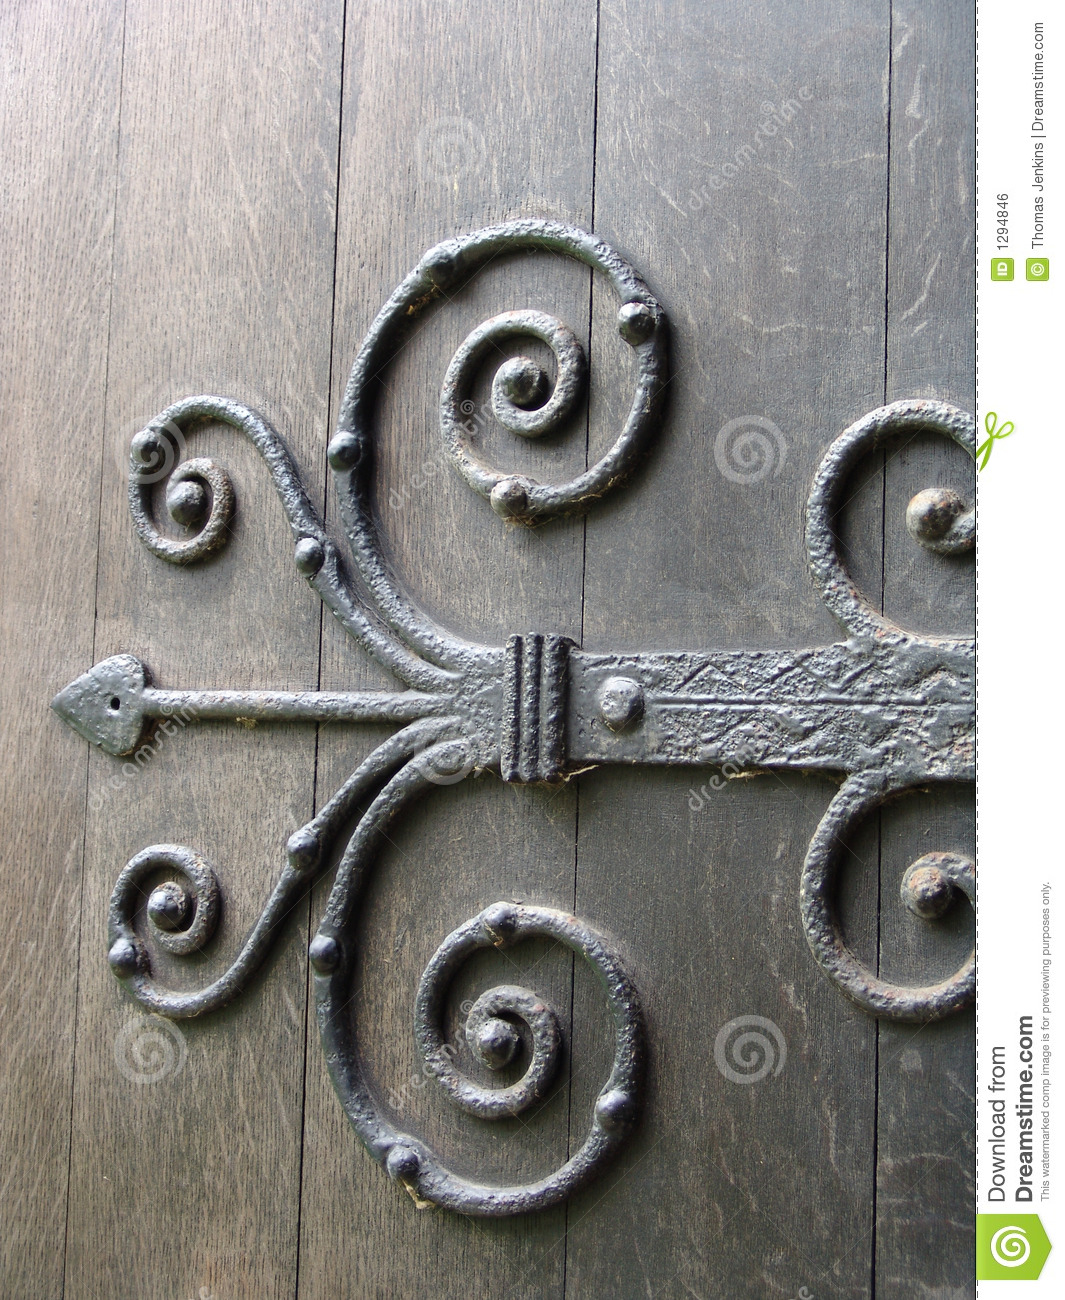 Ancient Wrought Iron Ornate Door Hinge On Old Wooden Door